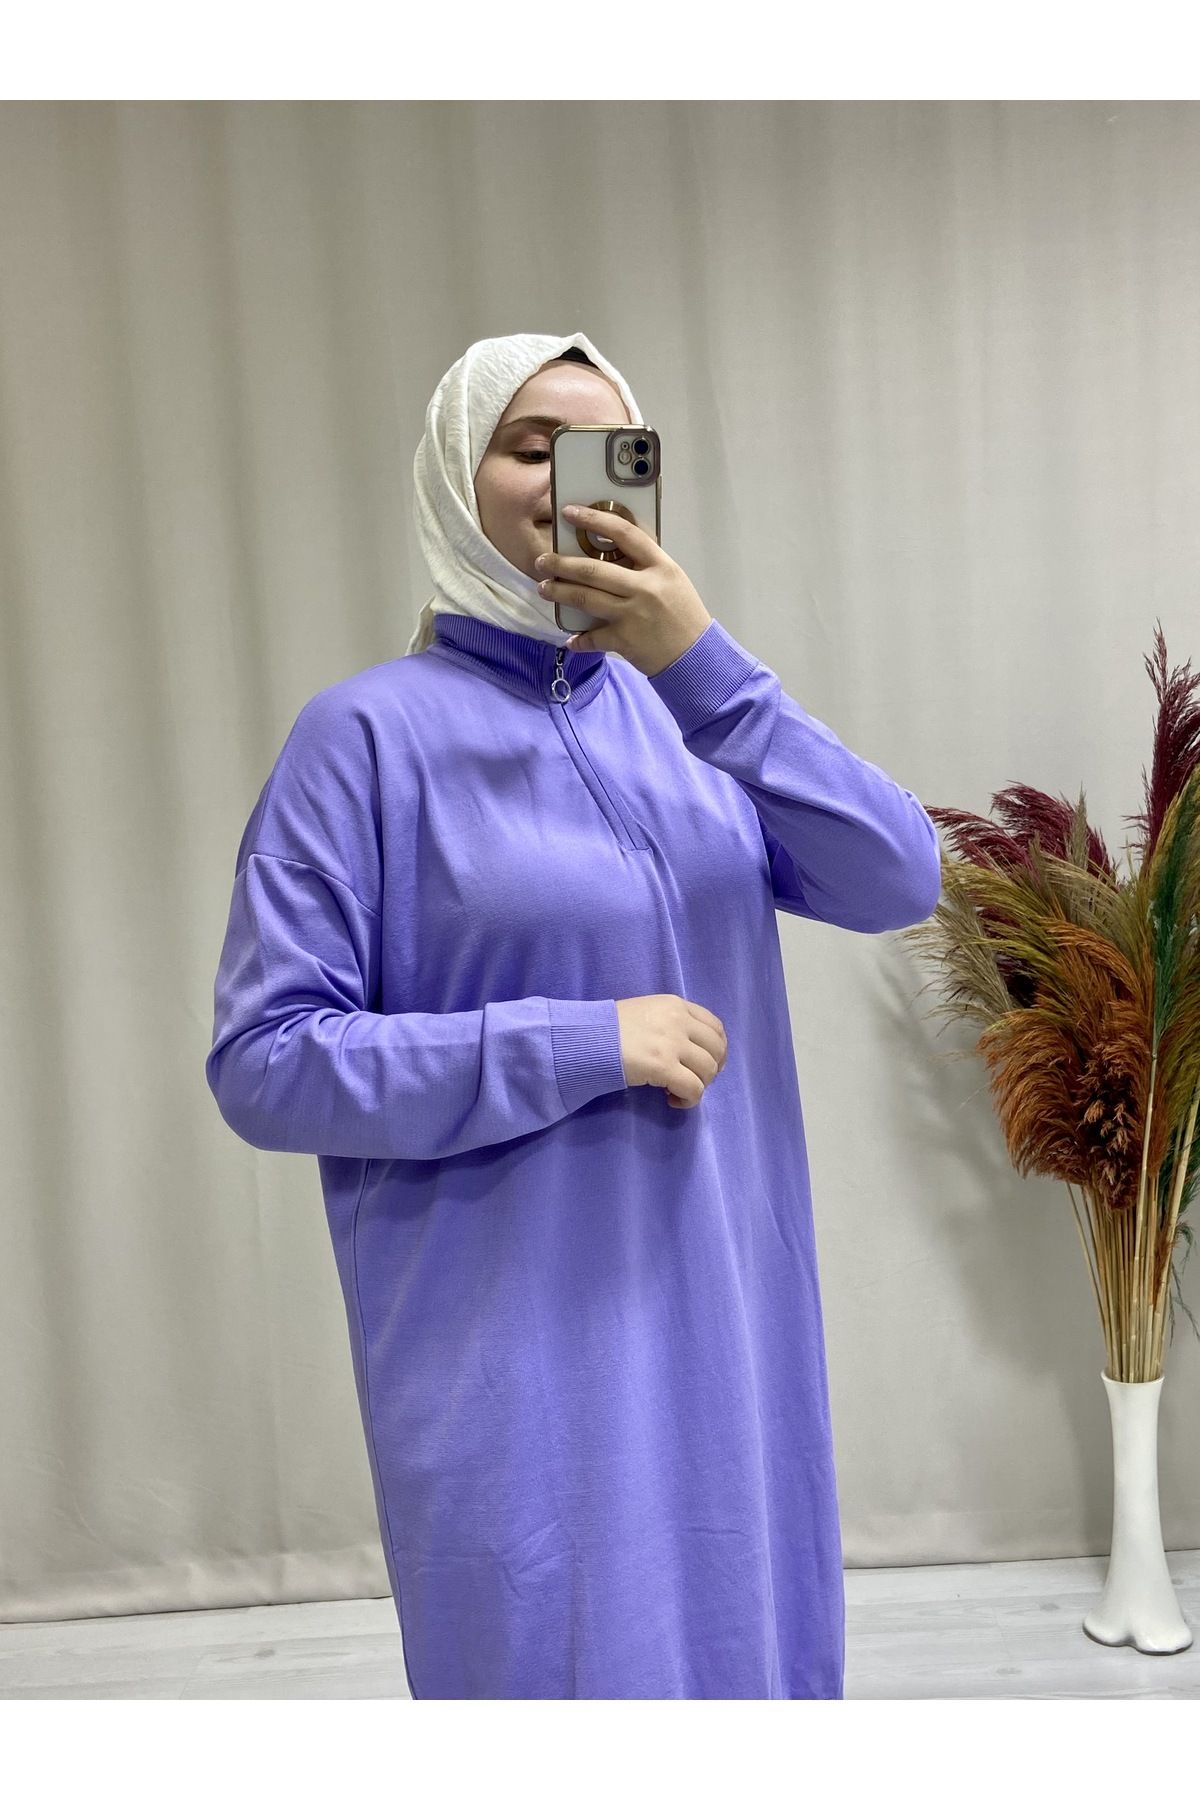 Papatya Giyim İzmit Kadın Fermuar Yakalı Triko Tesettür Kazak